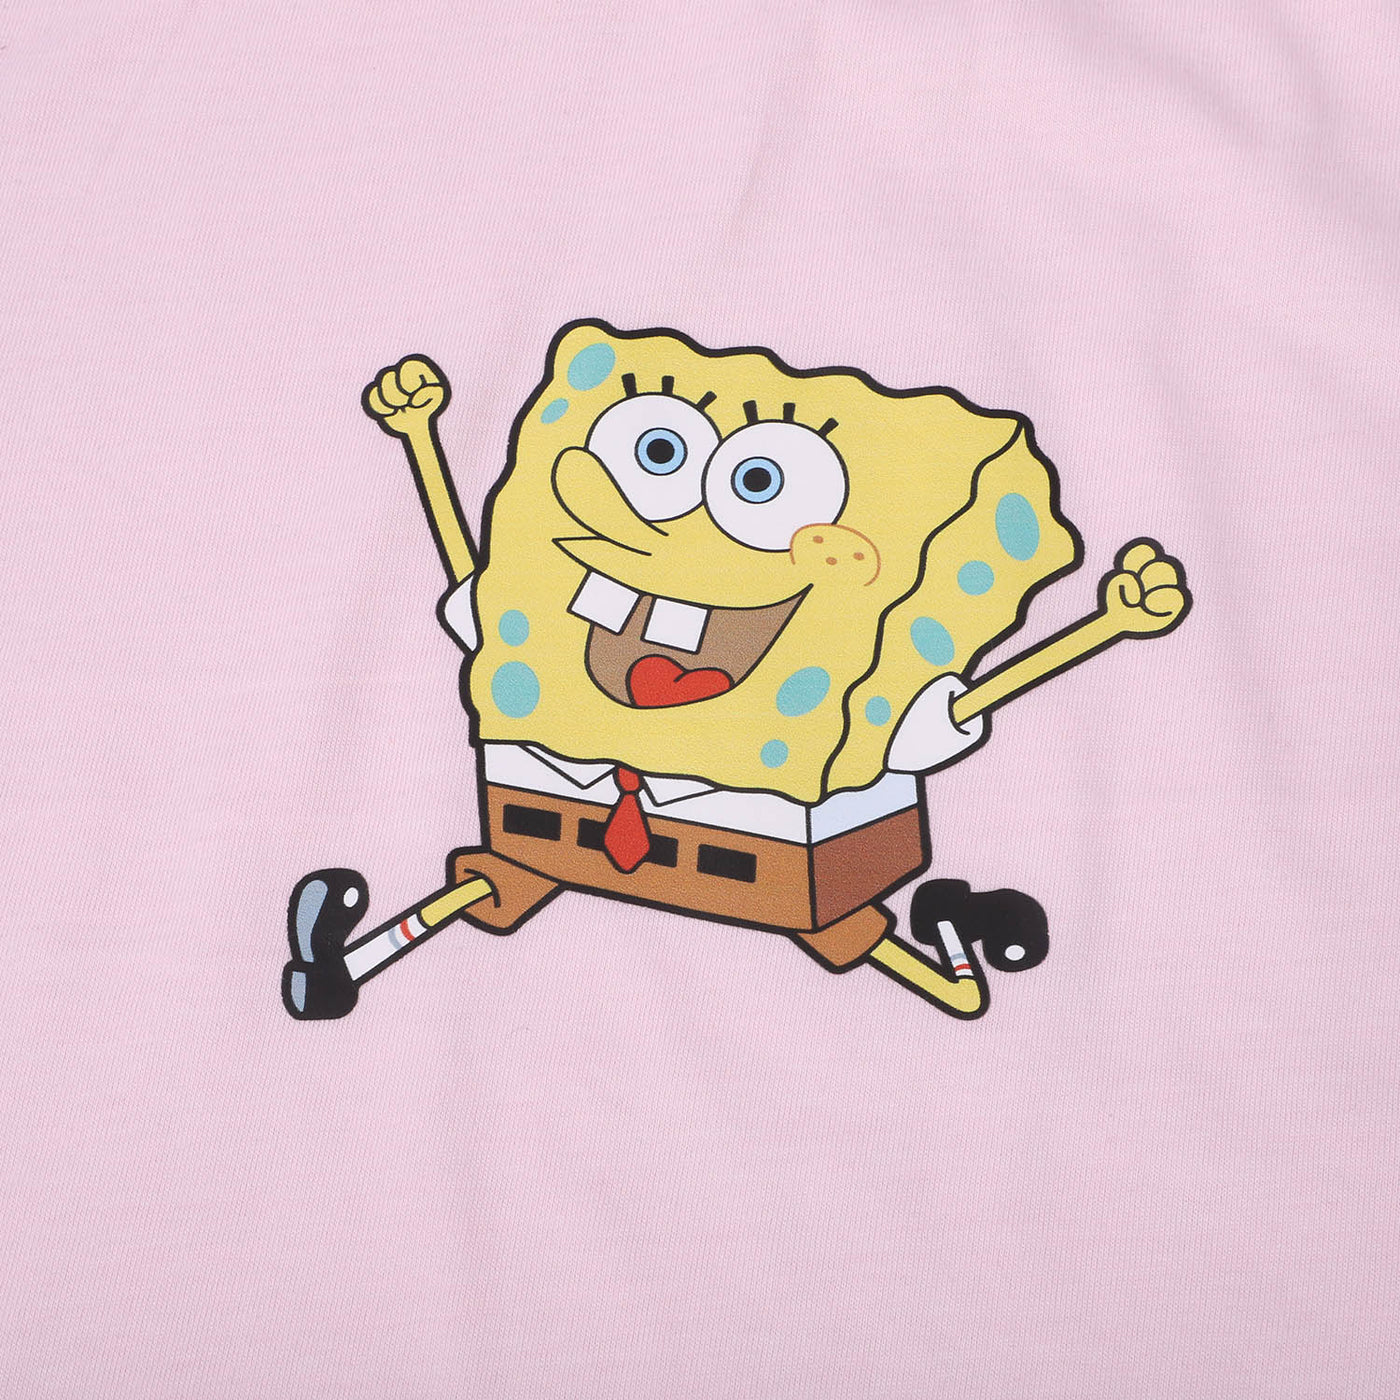 Teens Girls Cotton T-shirt Character - Light Pink